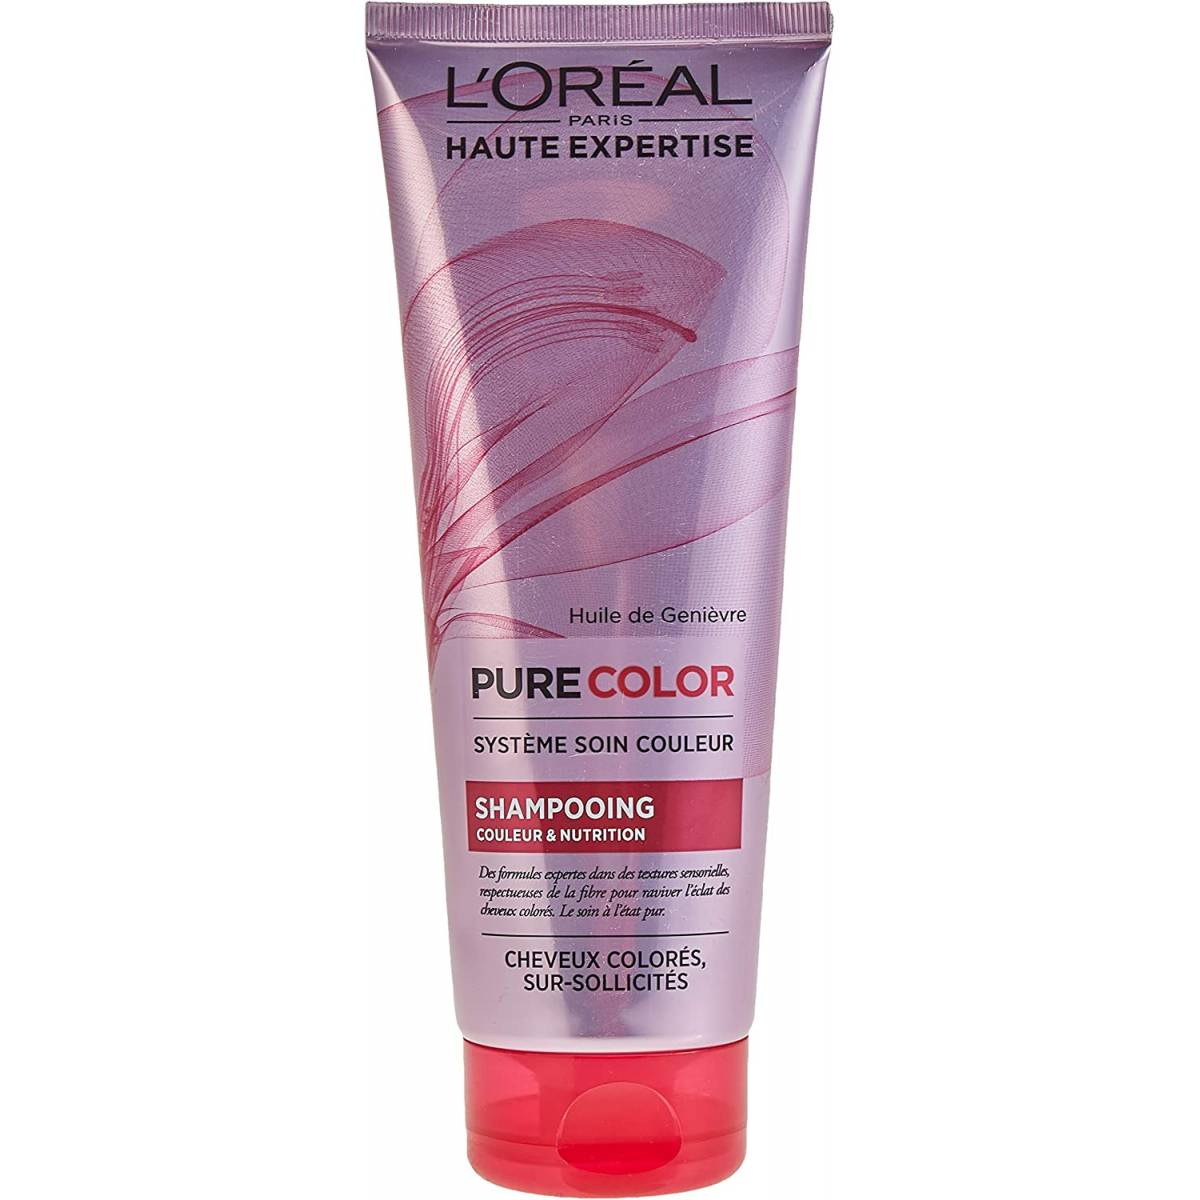 L'Oréal -  Haute Expertise Pure Color Shampoing Couleur et Nutrition 250 ml